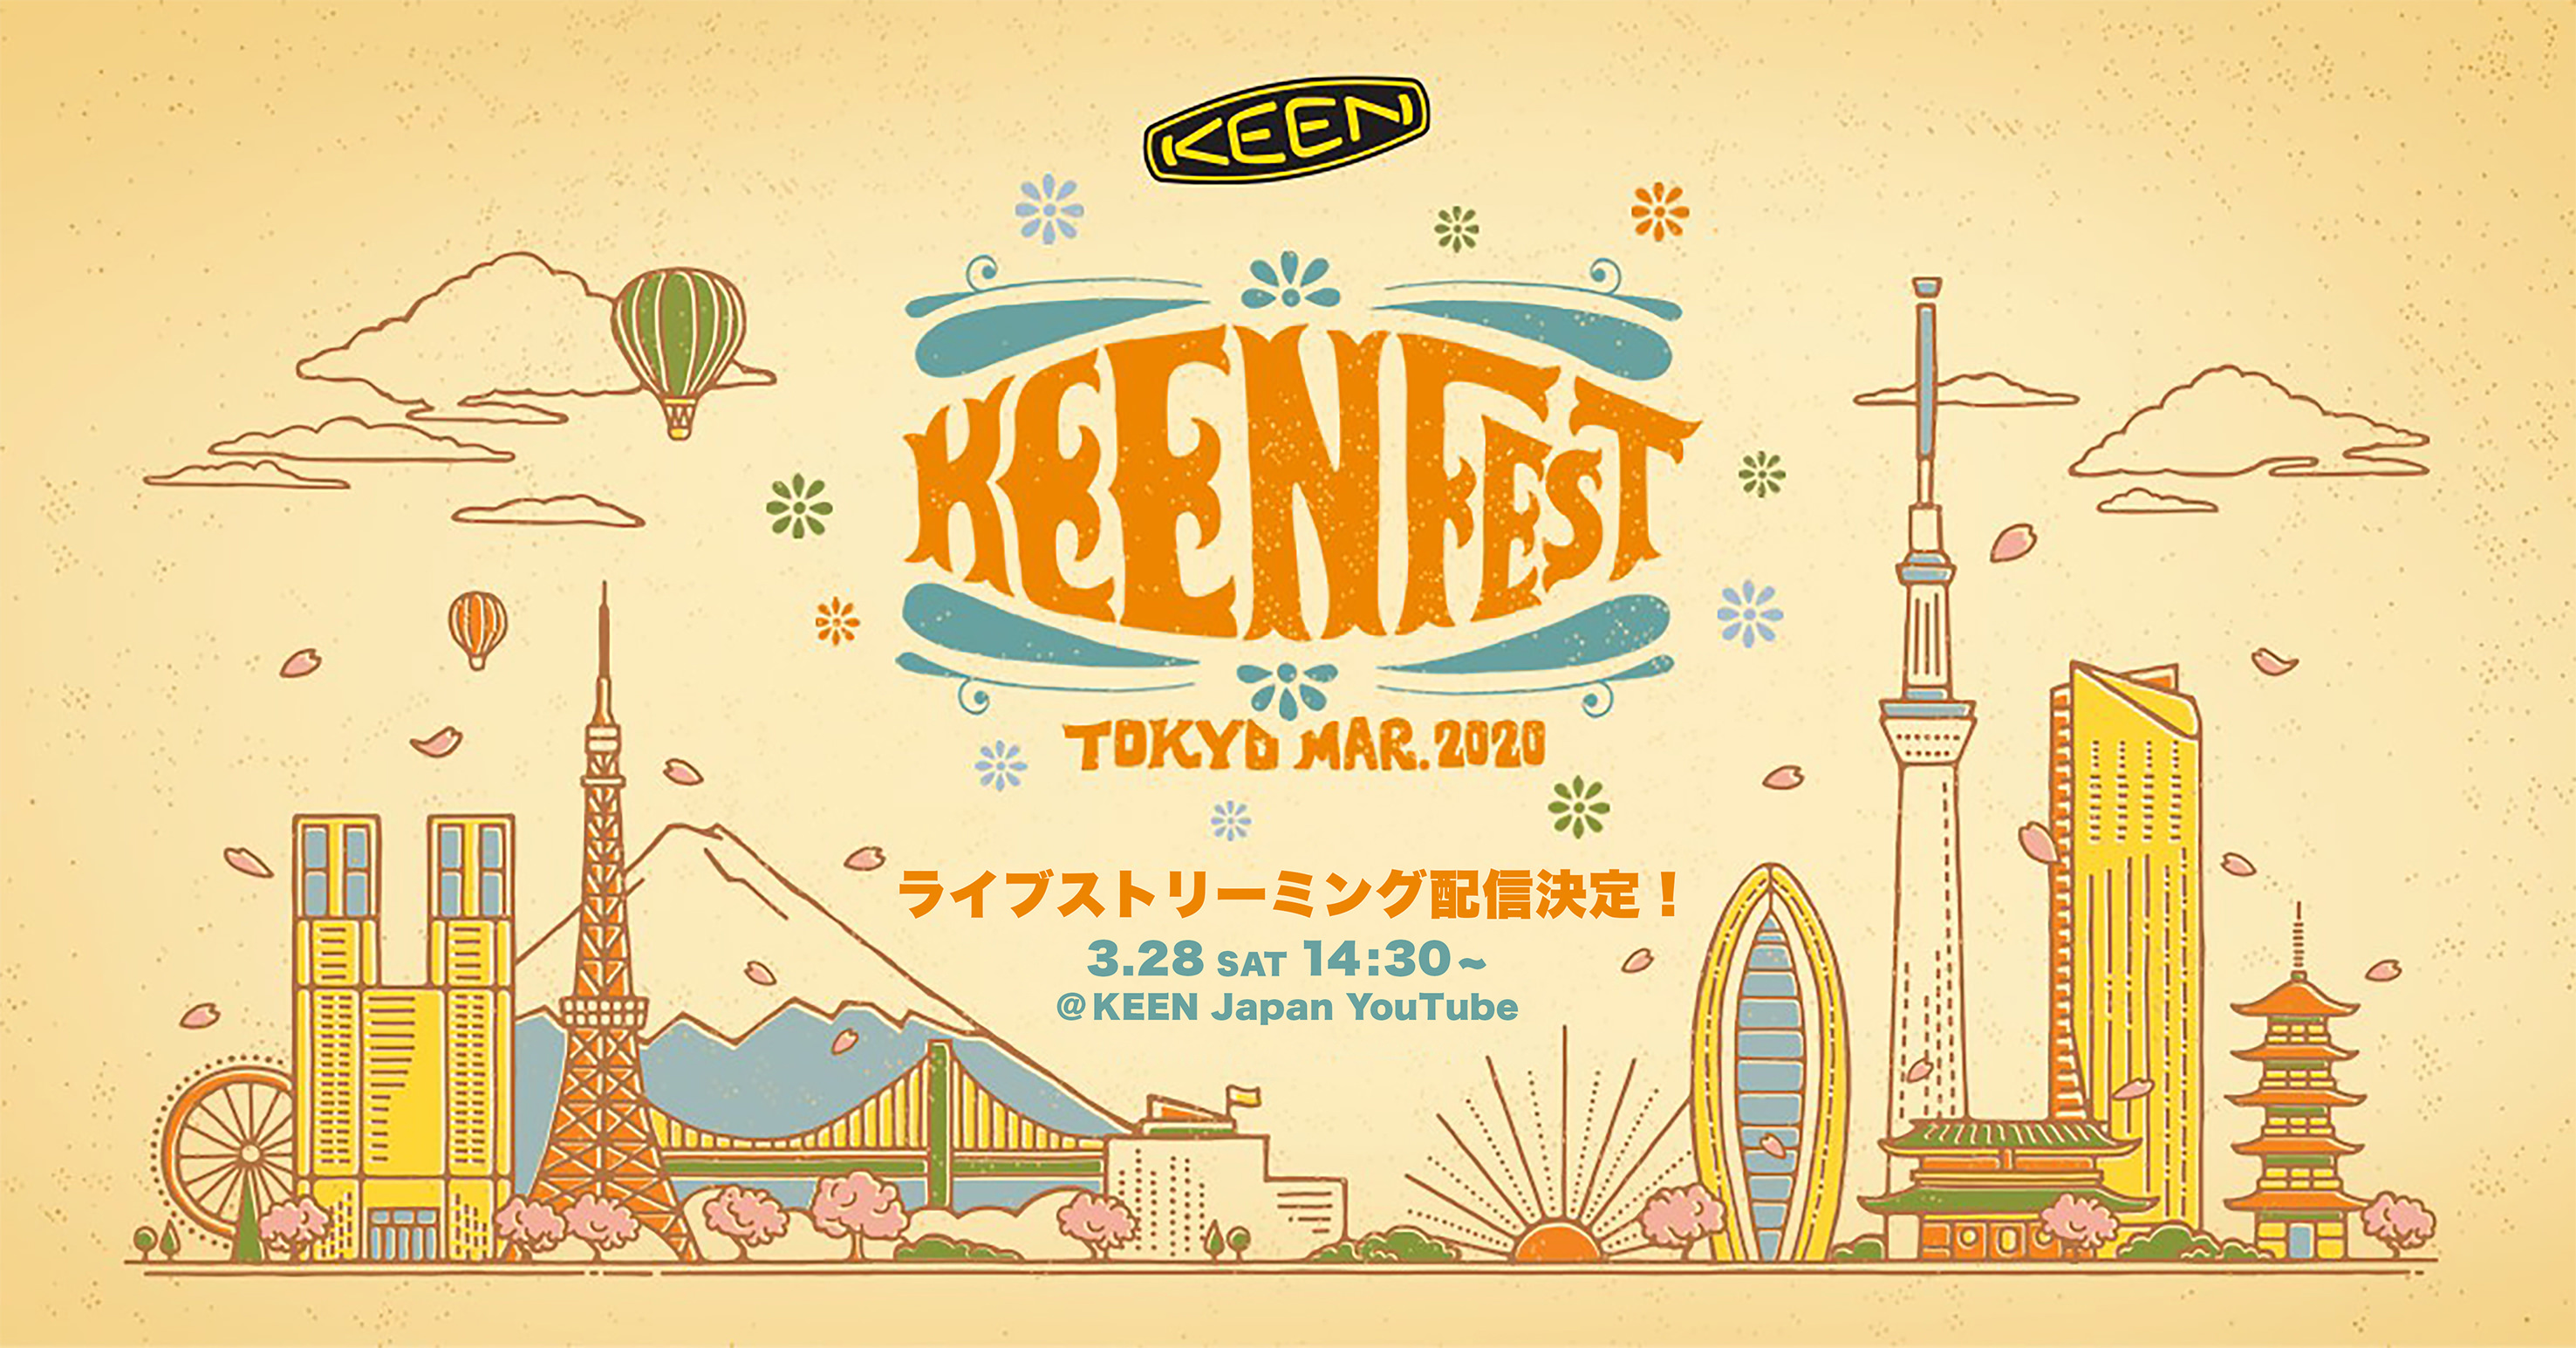 無料配信ライブストリーミングフェス
『KEENFEST TOKYO MARCH 2020』3/28(土)14:30～　
アウトドア・フットウェアブランド「KEEN」がYouTubeで開催！
― 音楽・アート・CSR活動など多様なKEENカルチャーを体感 ―